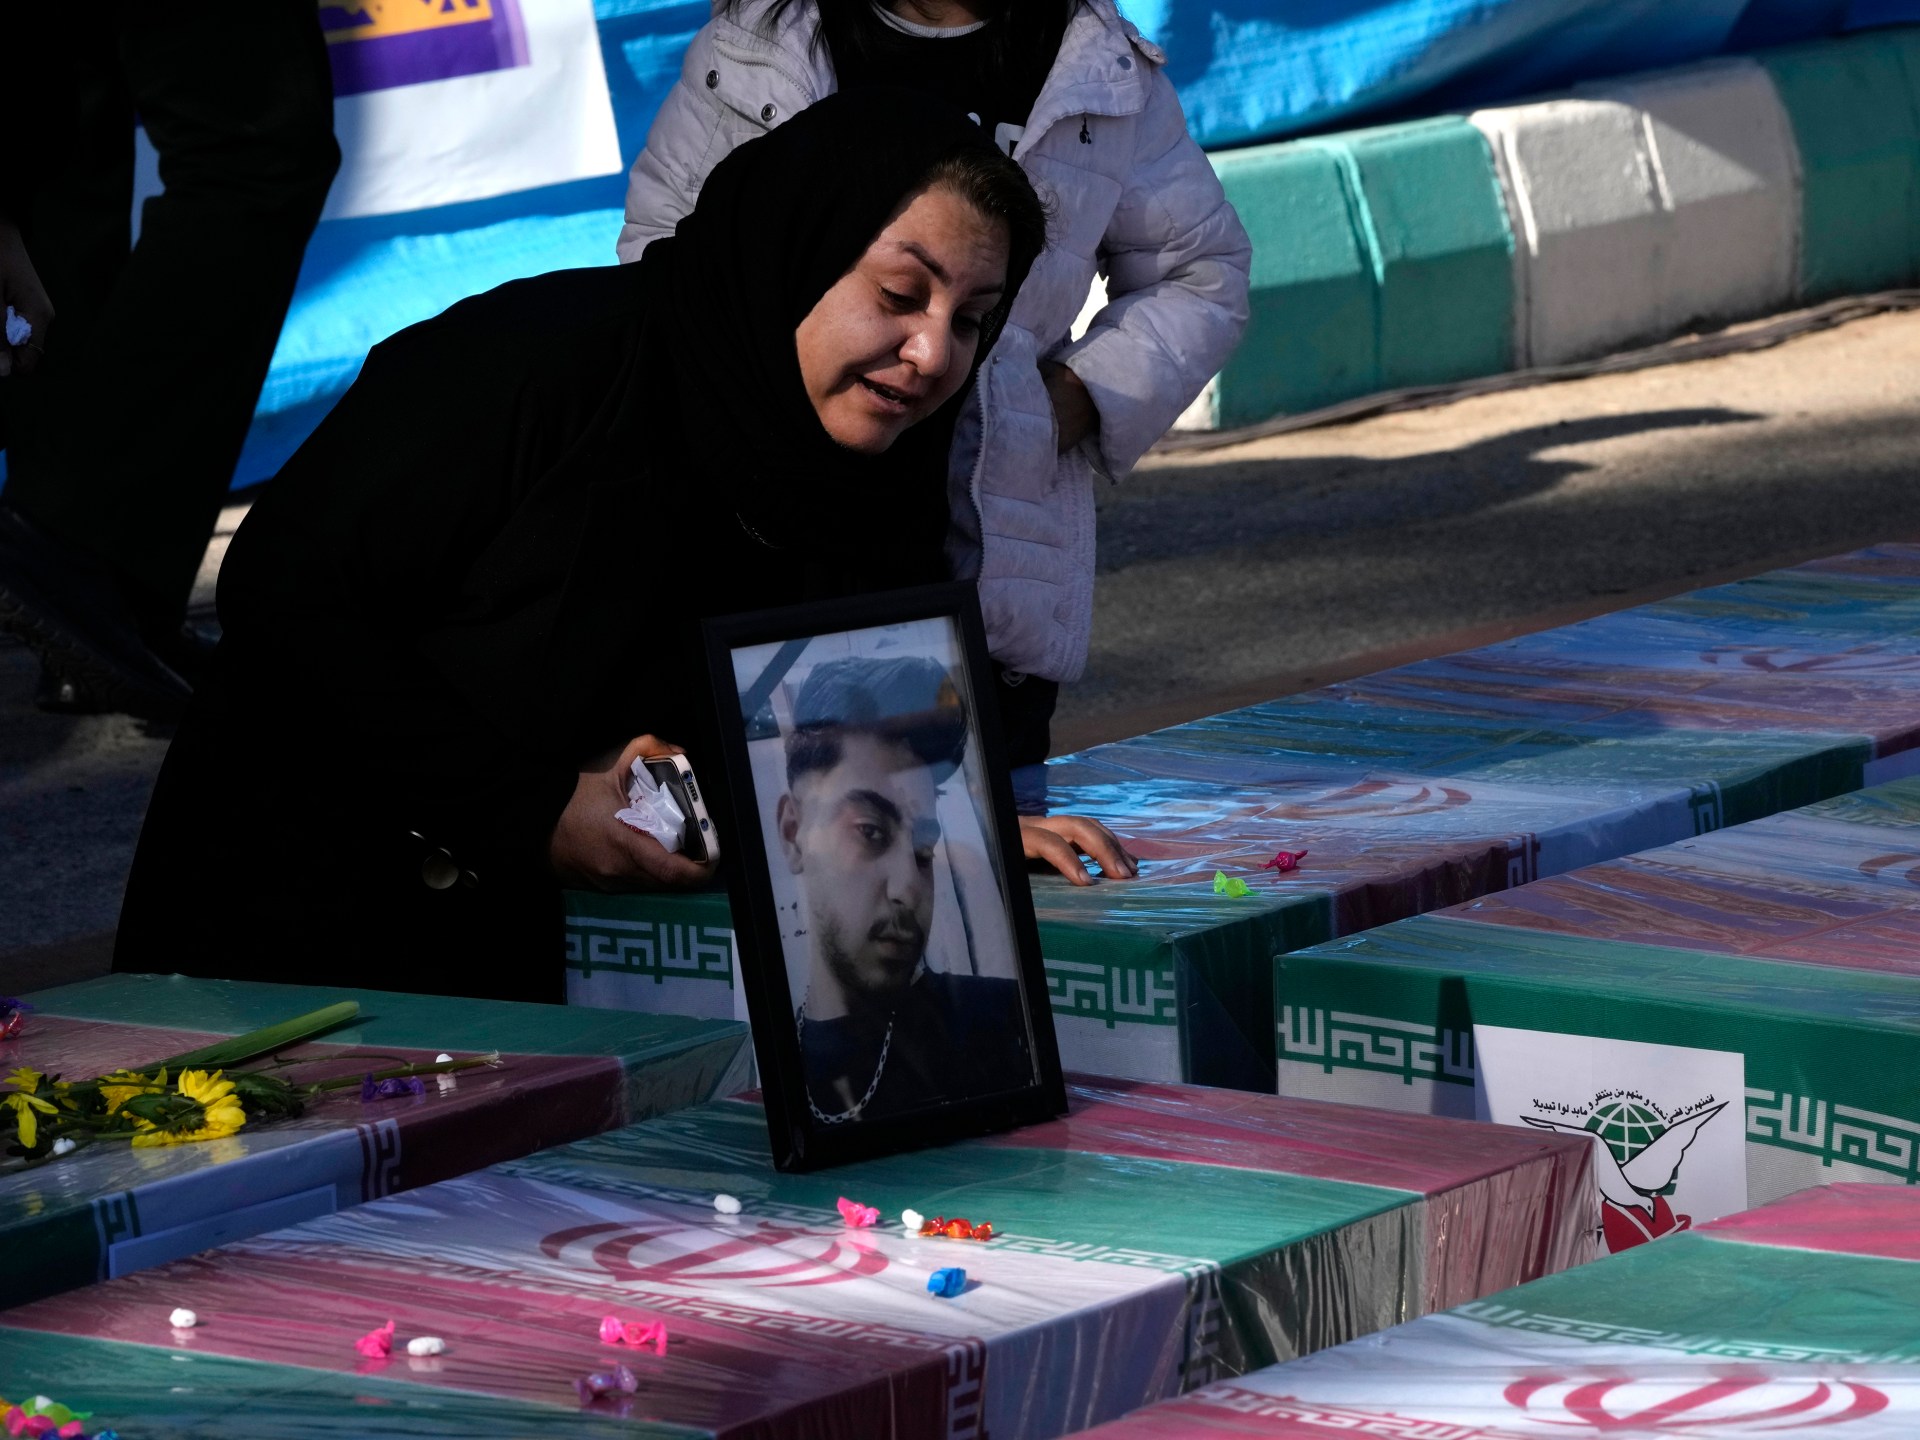 إيران تحدد هوية صانع قنابل مشتبه به وراء انفجارين مزدوجين وتعتقل 35 شخصًا  اخبار